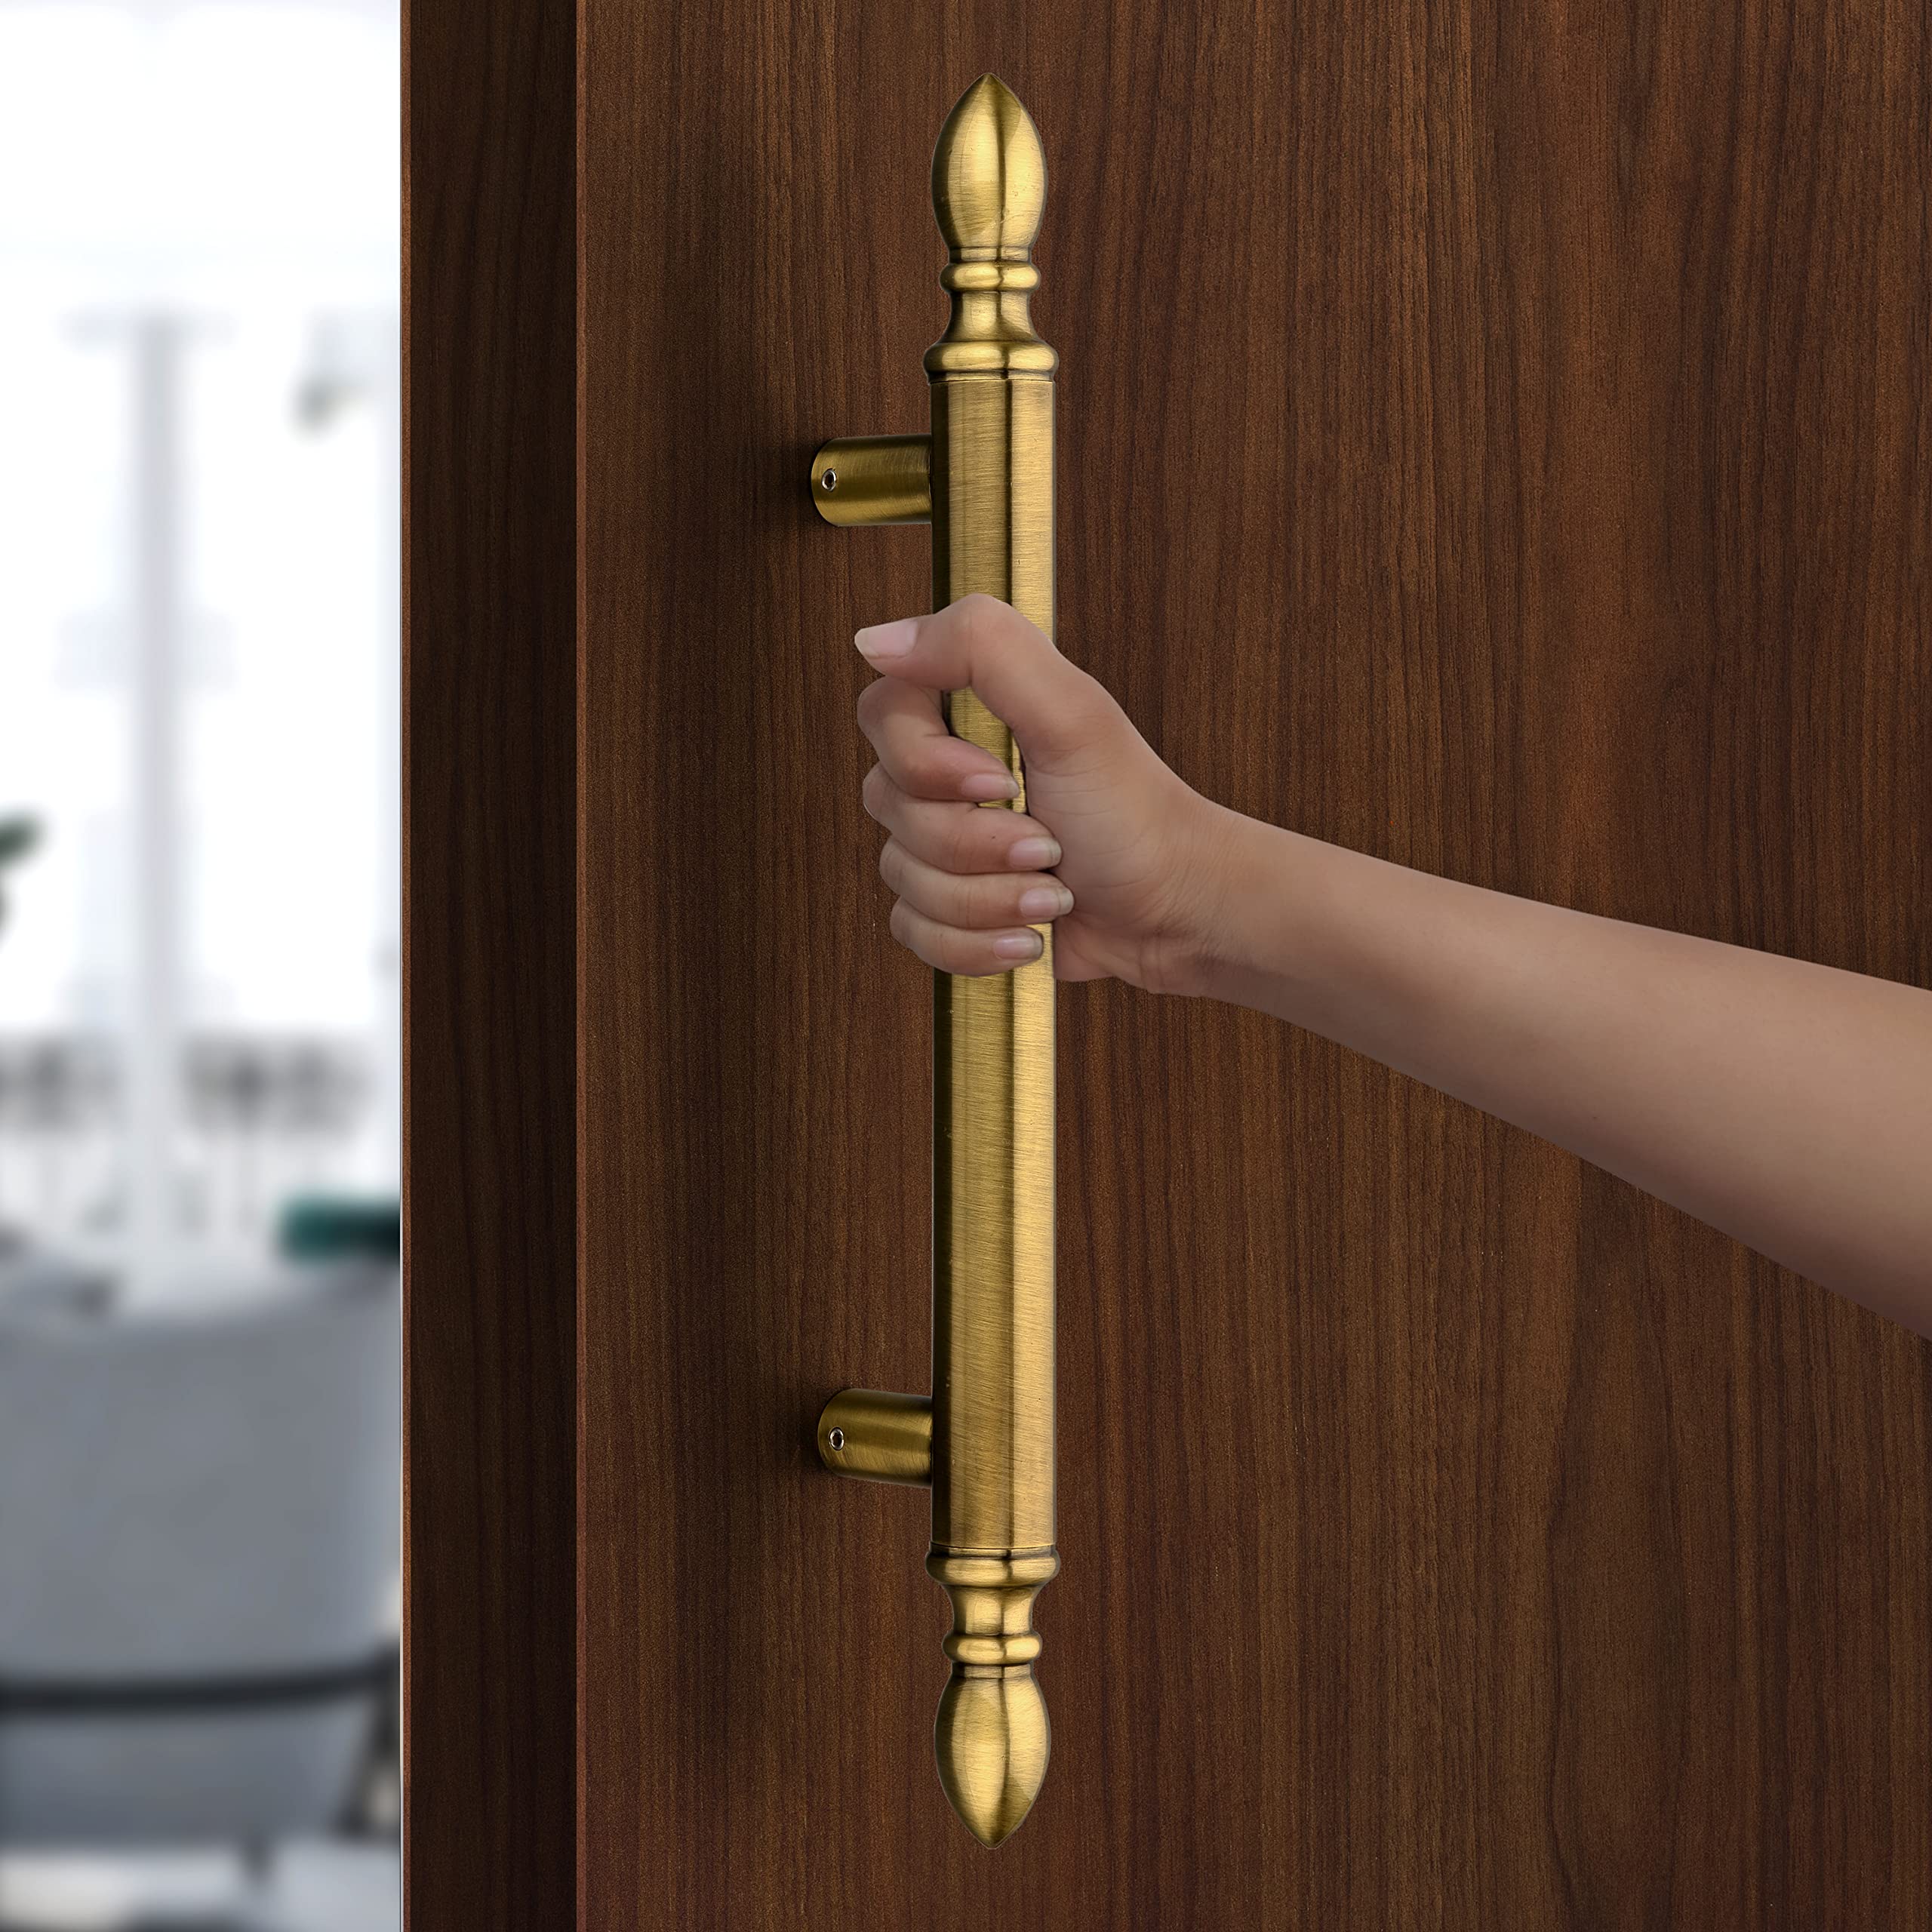 Plantex Altros Main Door Handle/Door & Home Decor/14 Inch Main Door Handle/Door Pull Push Handle – Pack of 1 (106, Brass Antique Finish)